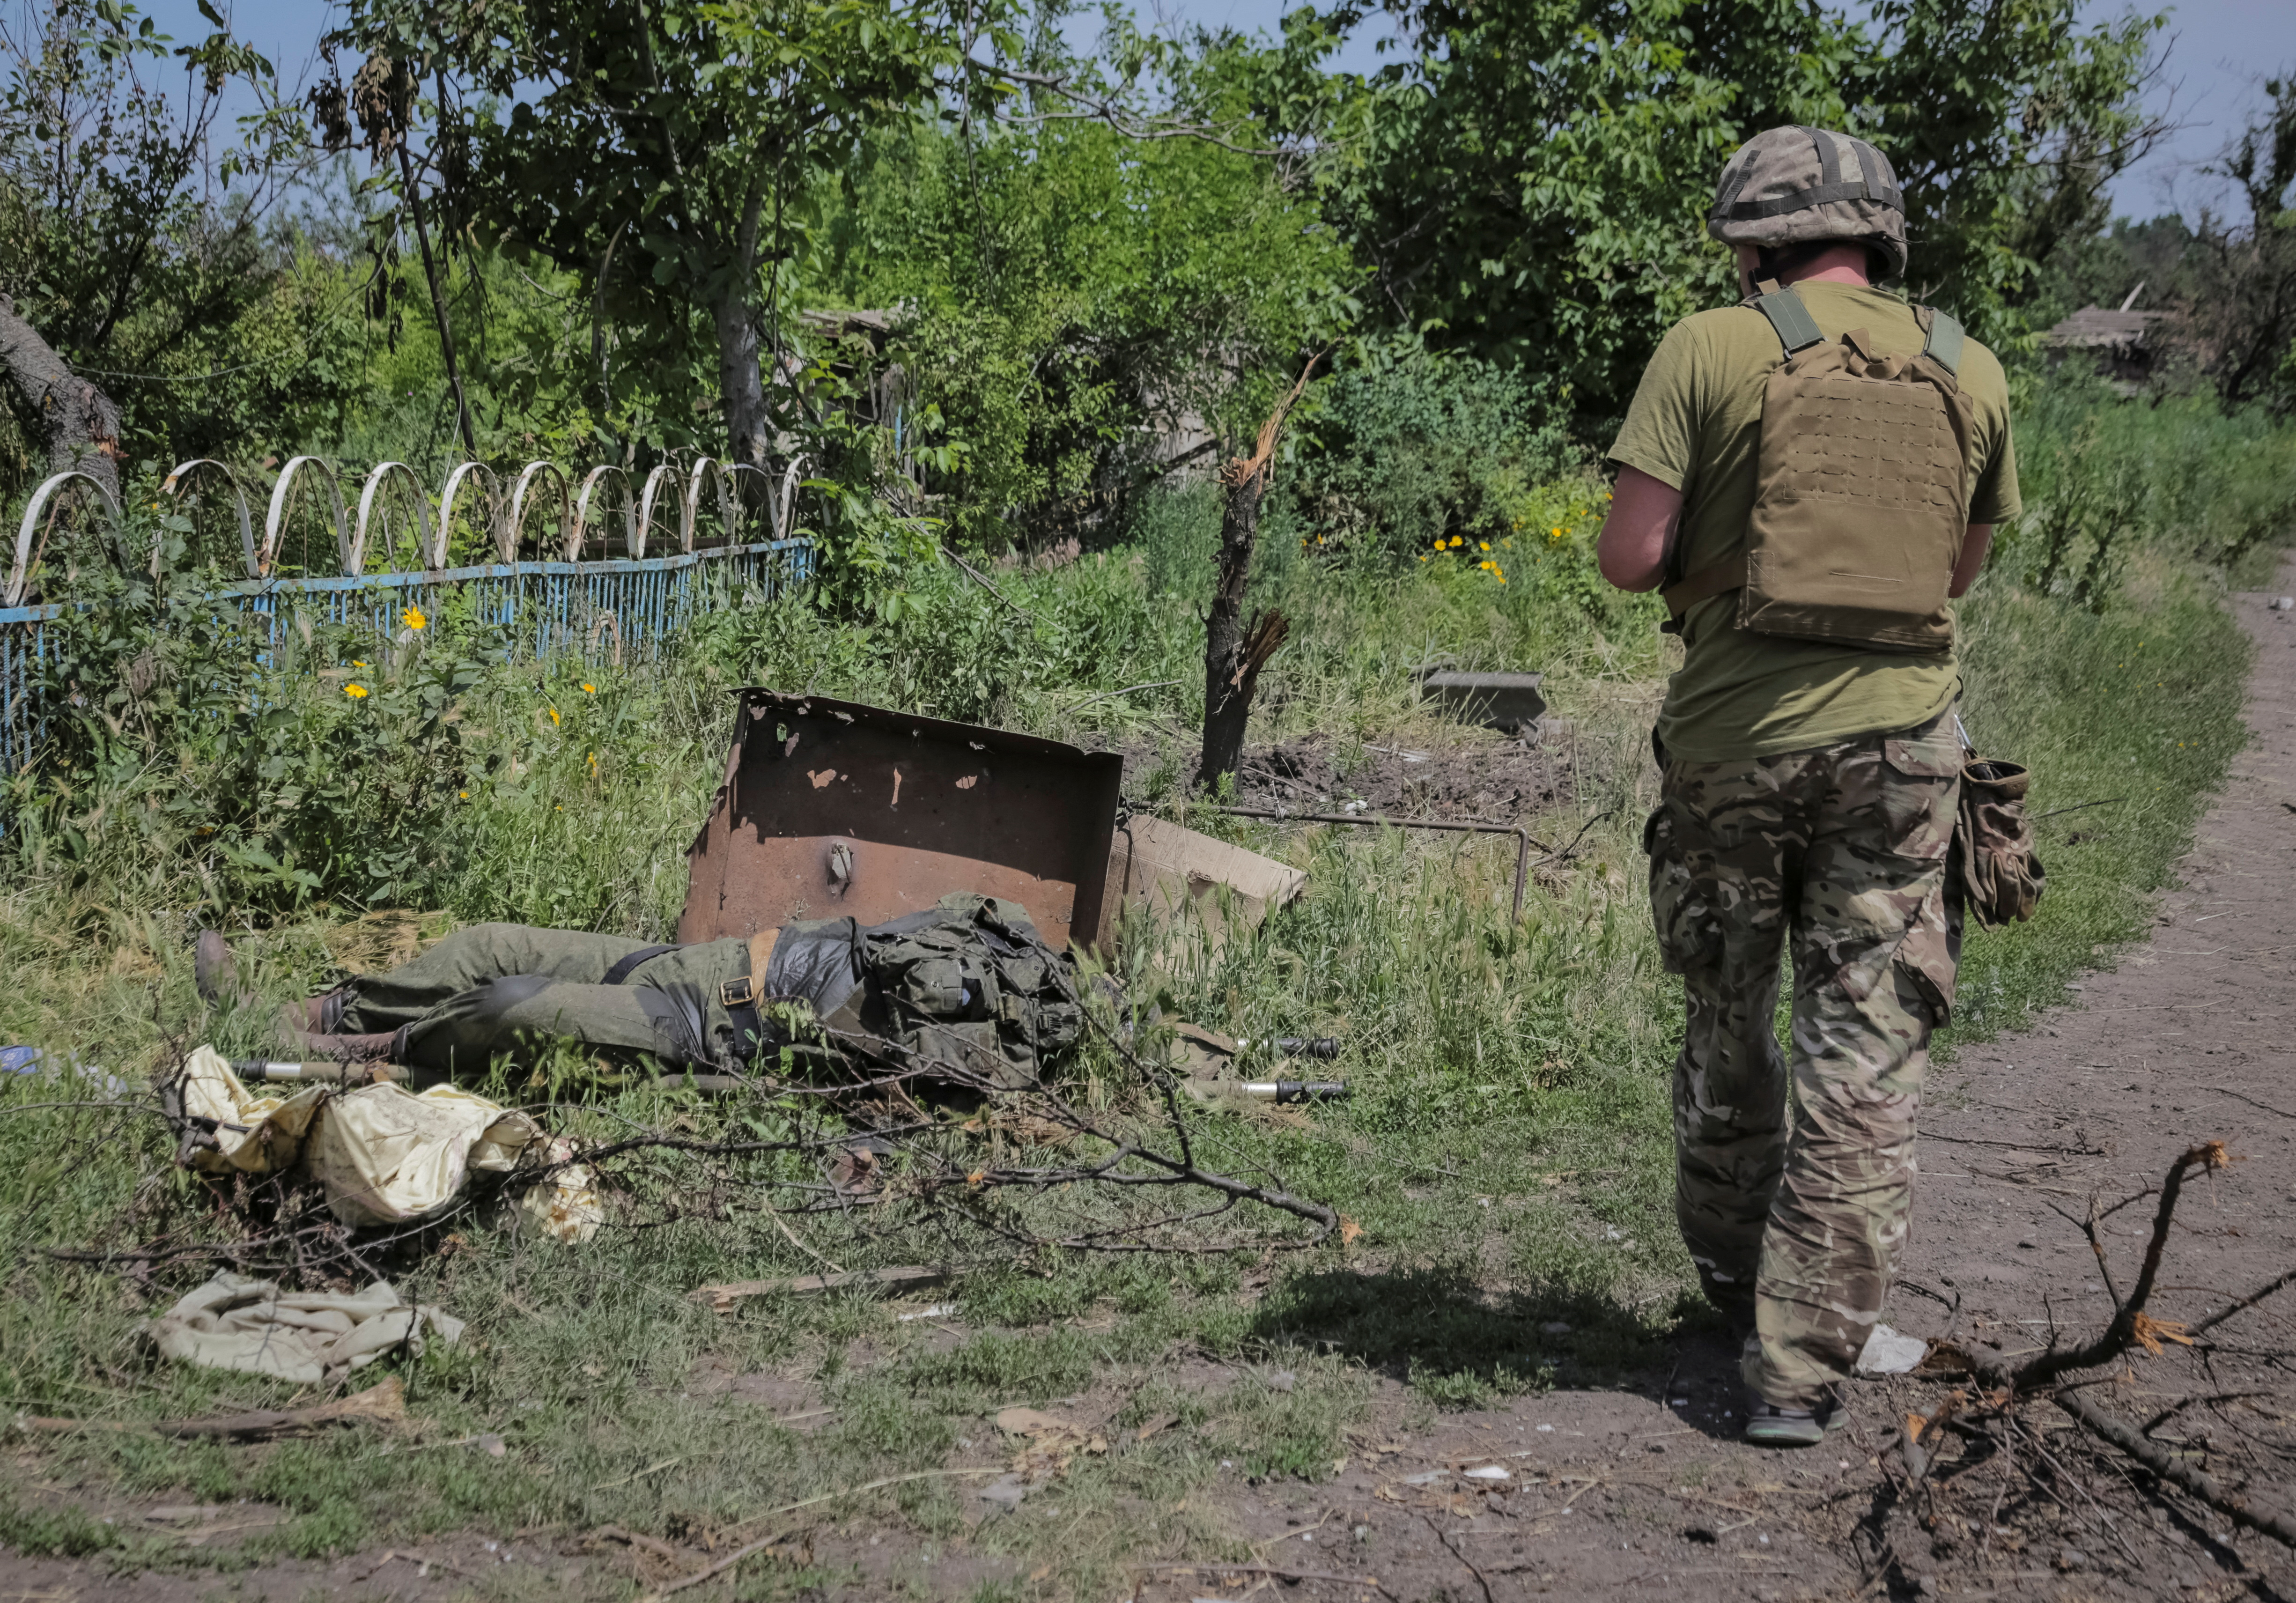 El cuerpo de un soldado ruso que voló por los aires yace junto a un vehículo militar ruso abandonado (REUTERS/Oleksandr Ratushniak)